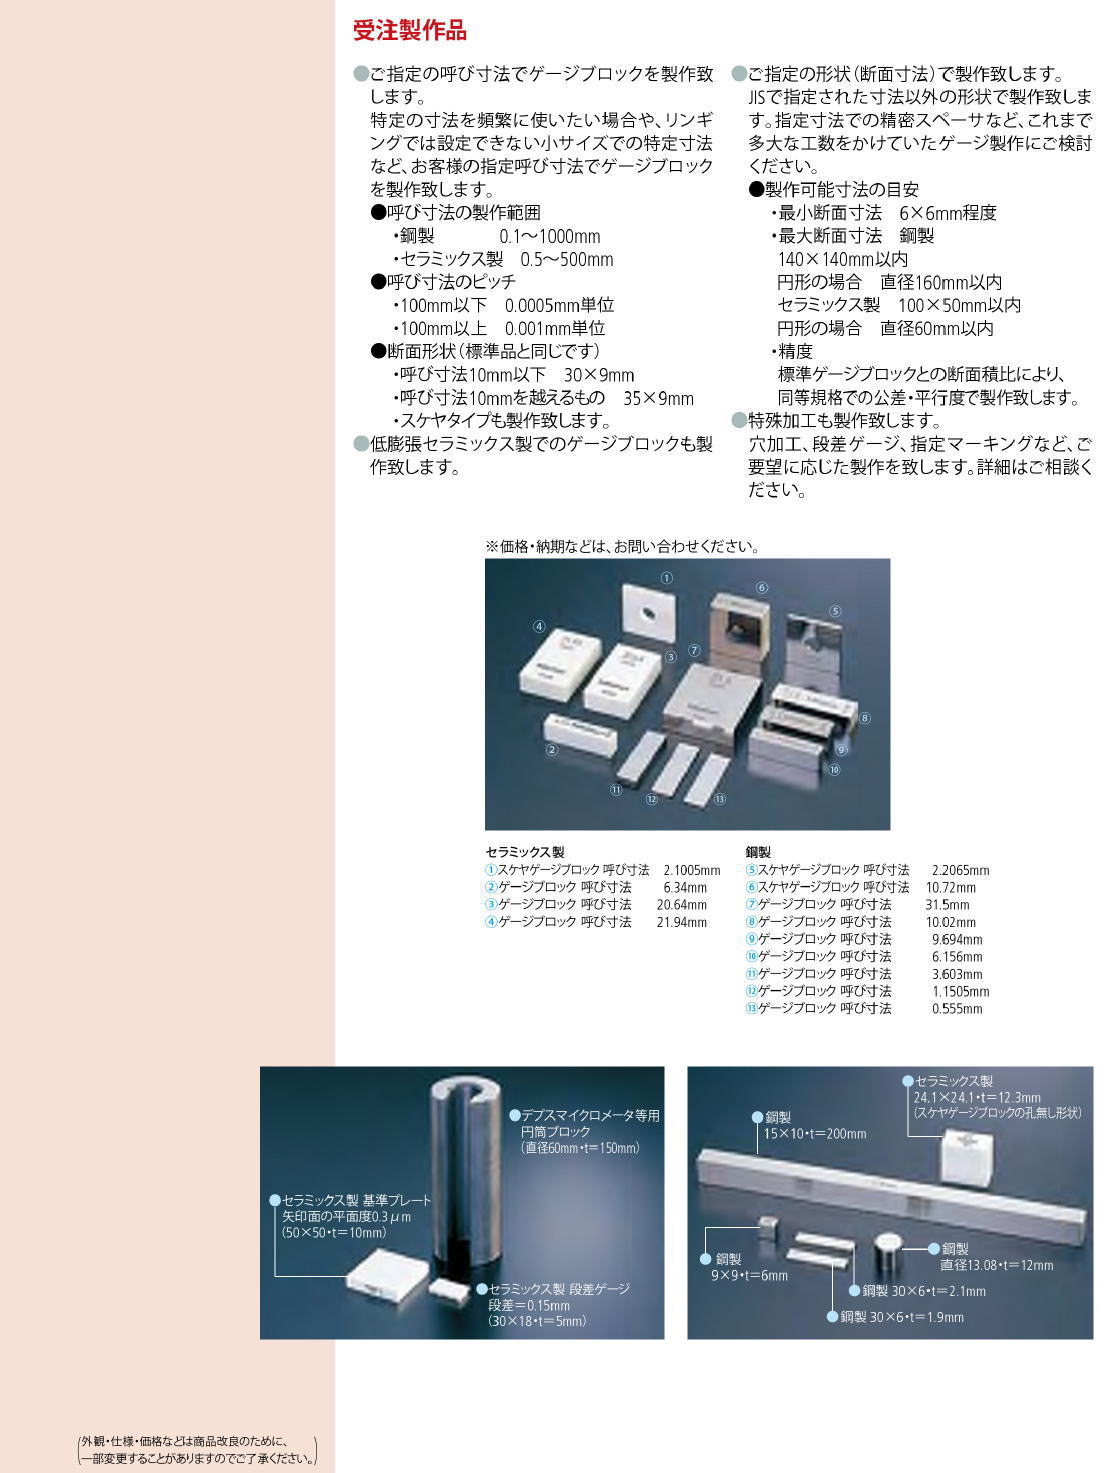 ミツトヨ (Mitutoyo) 単体レクタンギュラゲージブロック 611698-013 (鋼製)(校正証明書付) 計測、検査